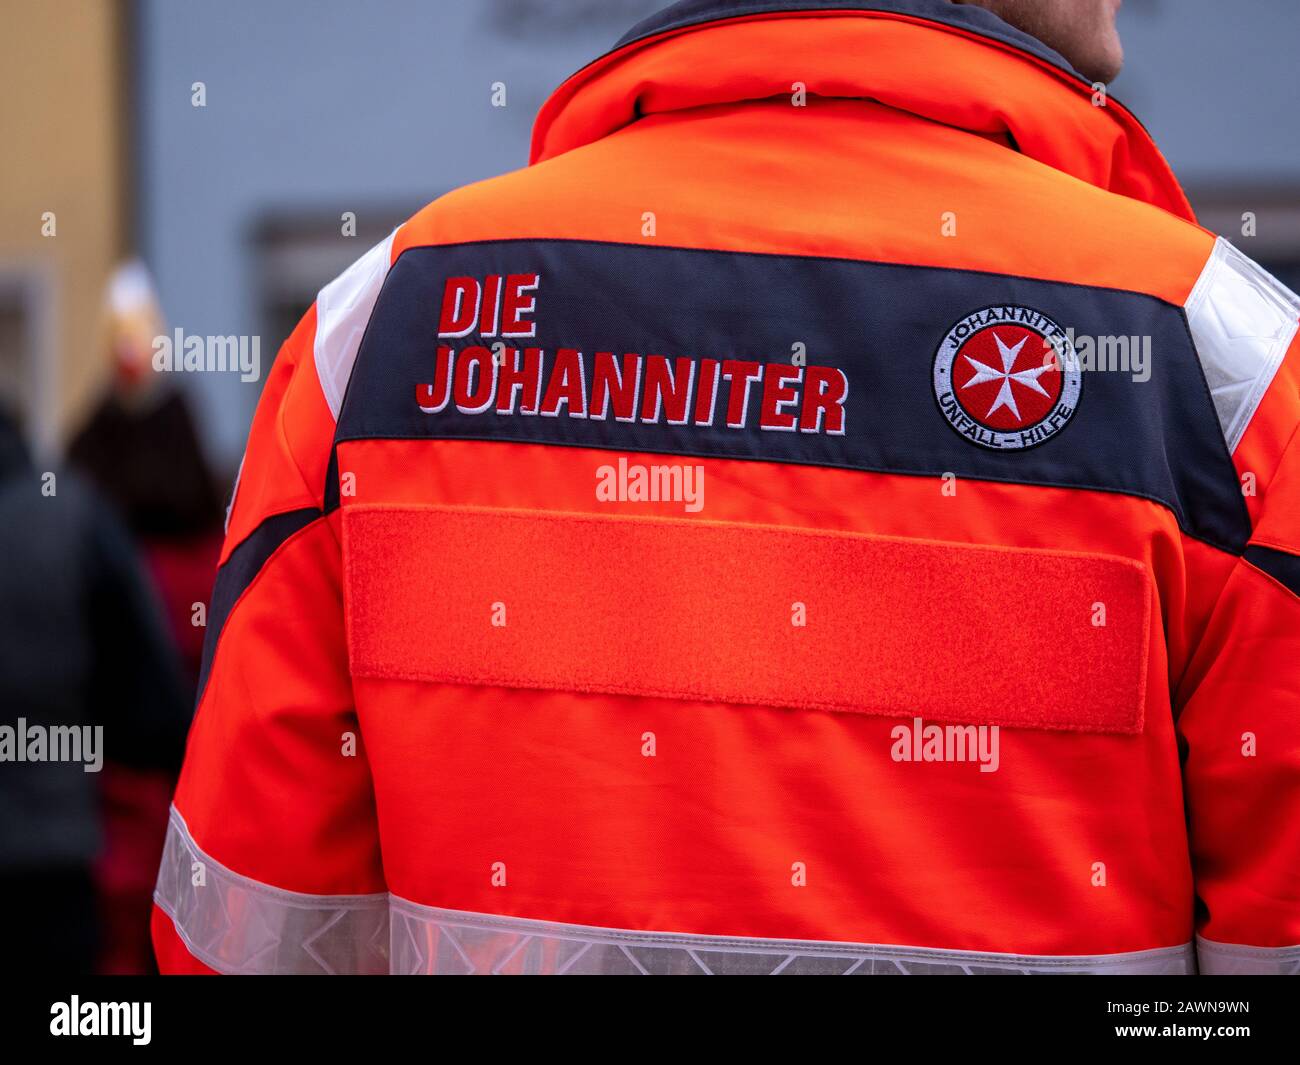 Berlin, Allemagne - 09 Février. 2020: Berlin, Allemagne - 09 février 2020: Le logo Johanniter, une compagnie d'ambulance allemande, au dos d'un orange Banque D'Images